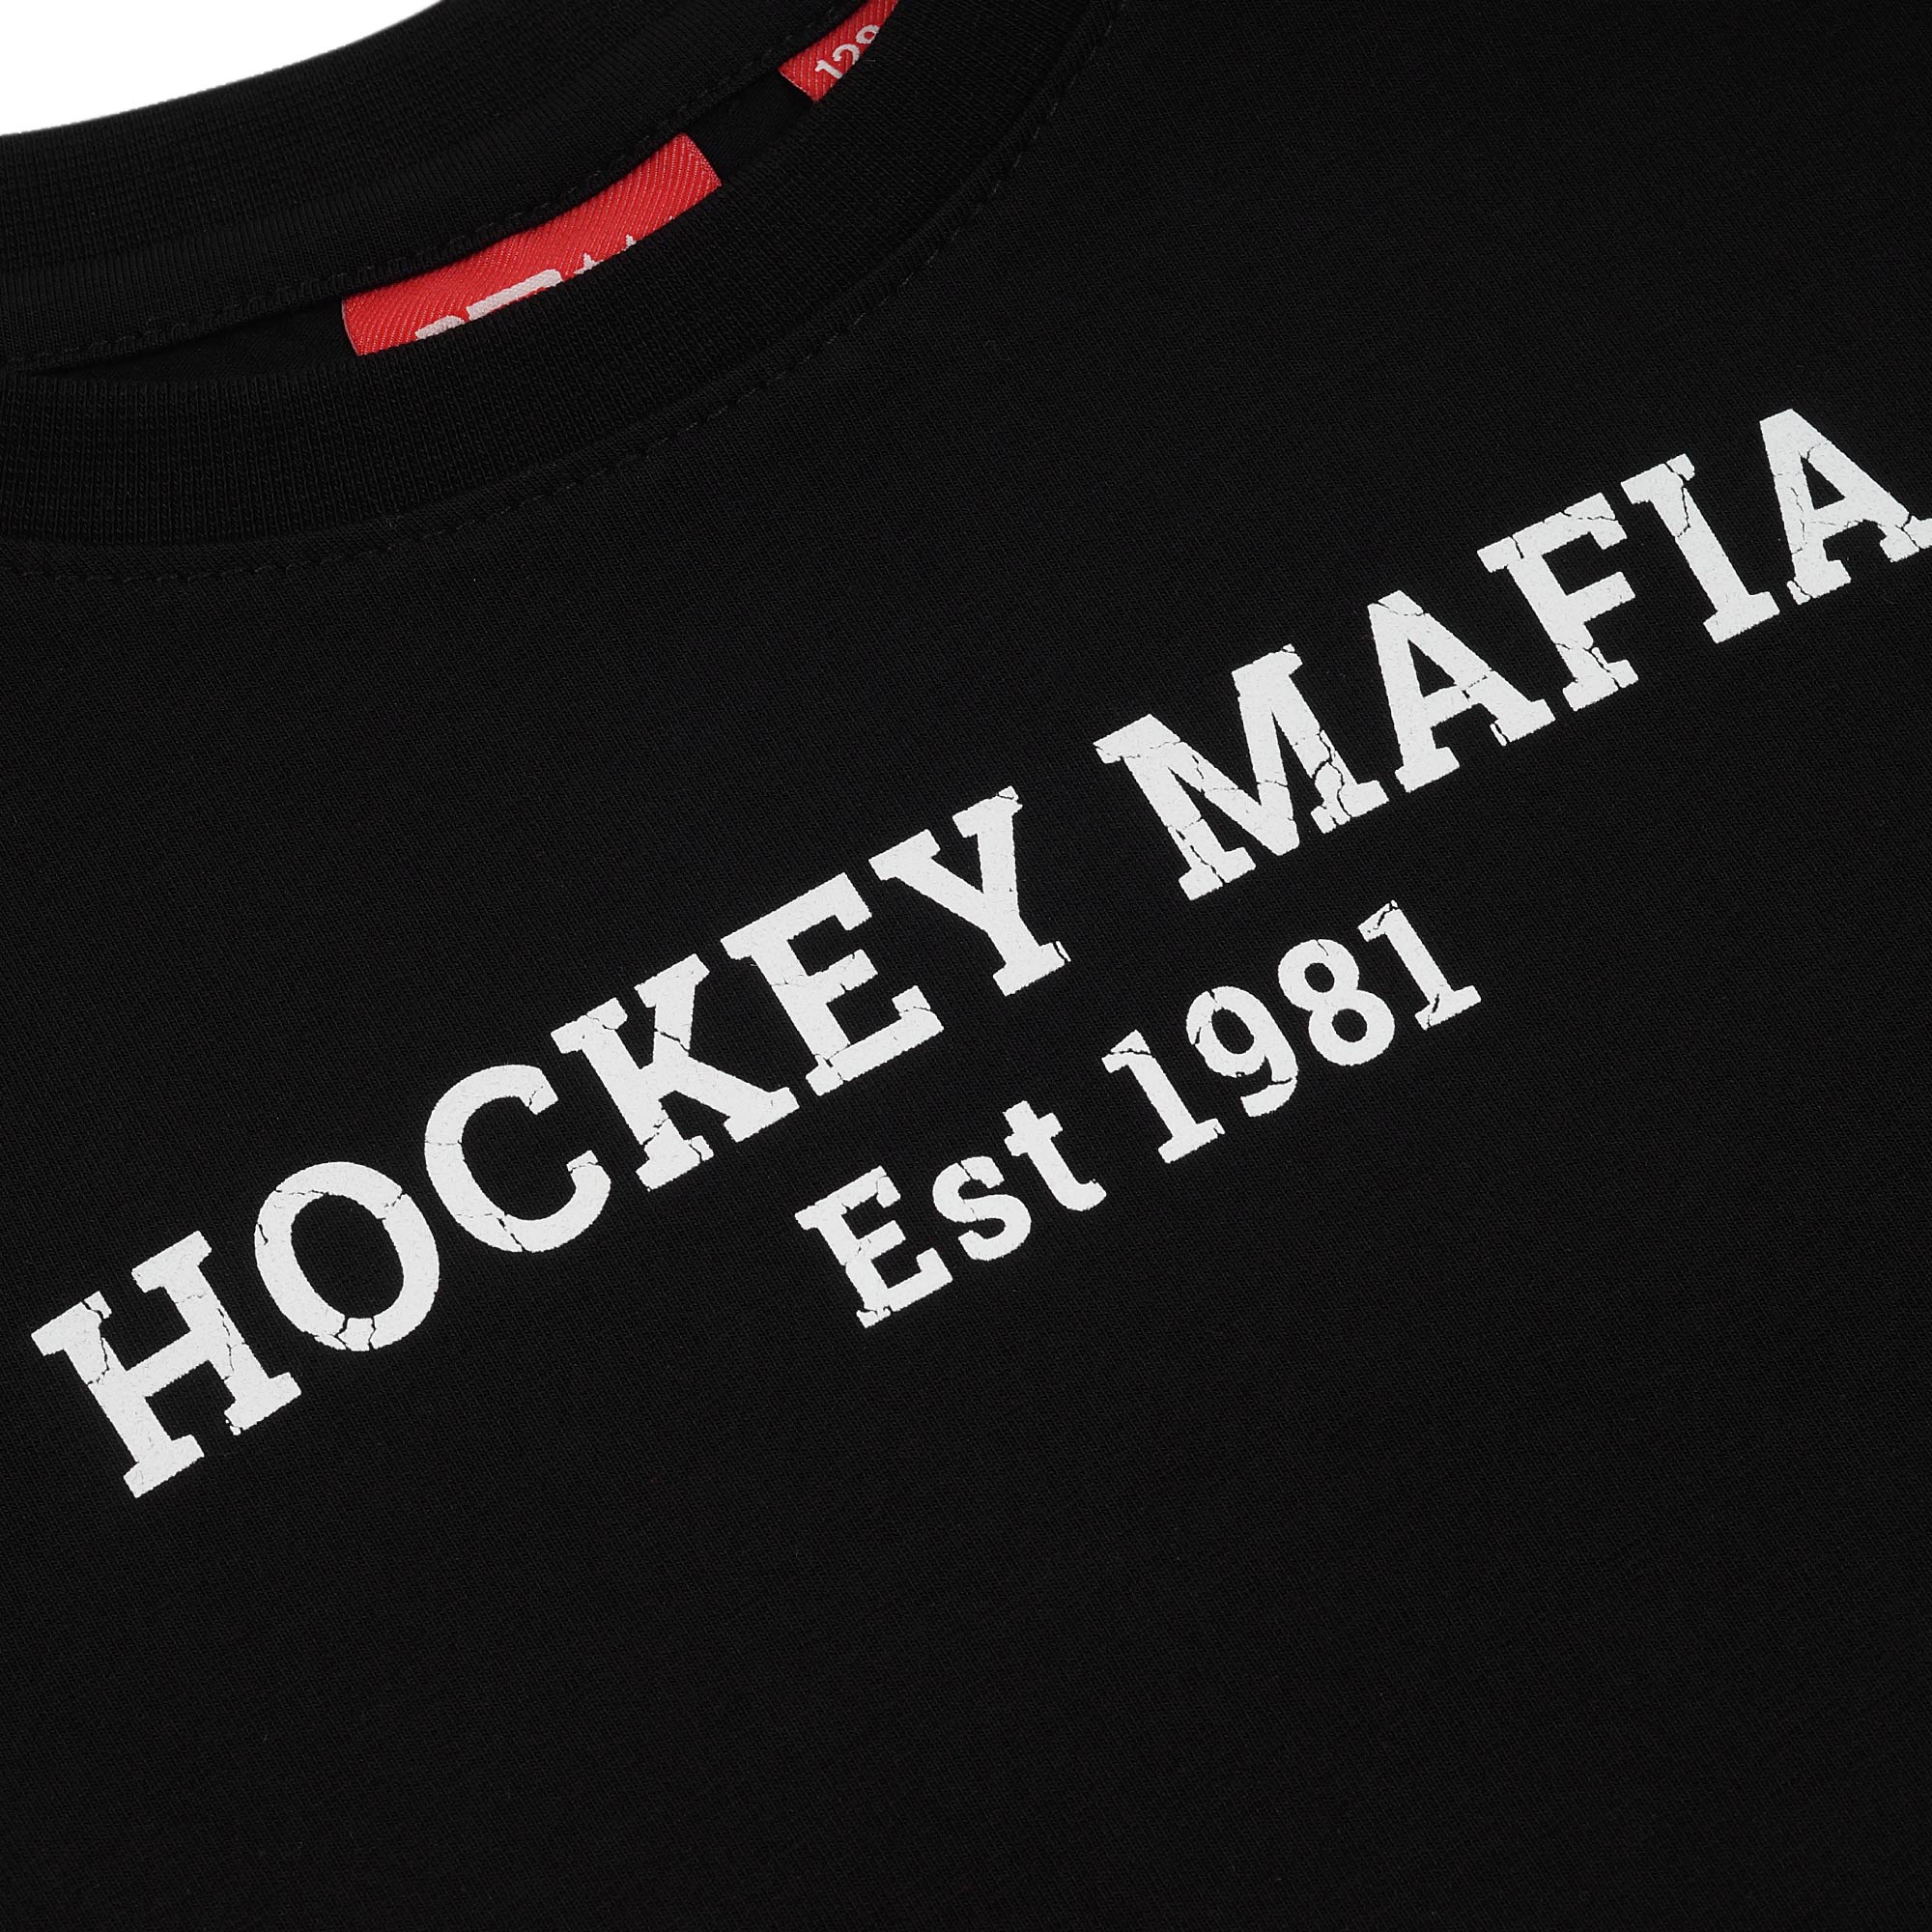 Футболка детская "Hockey Mafia. Est 1981" черная